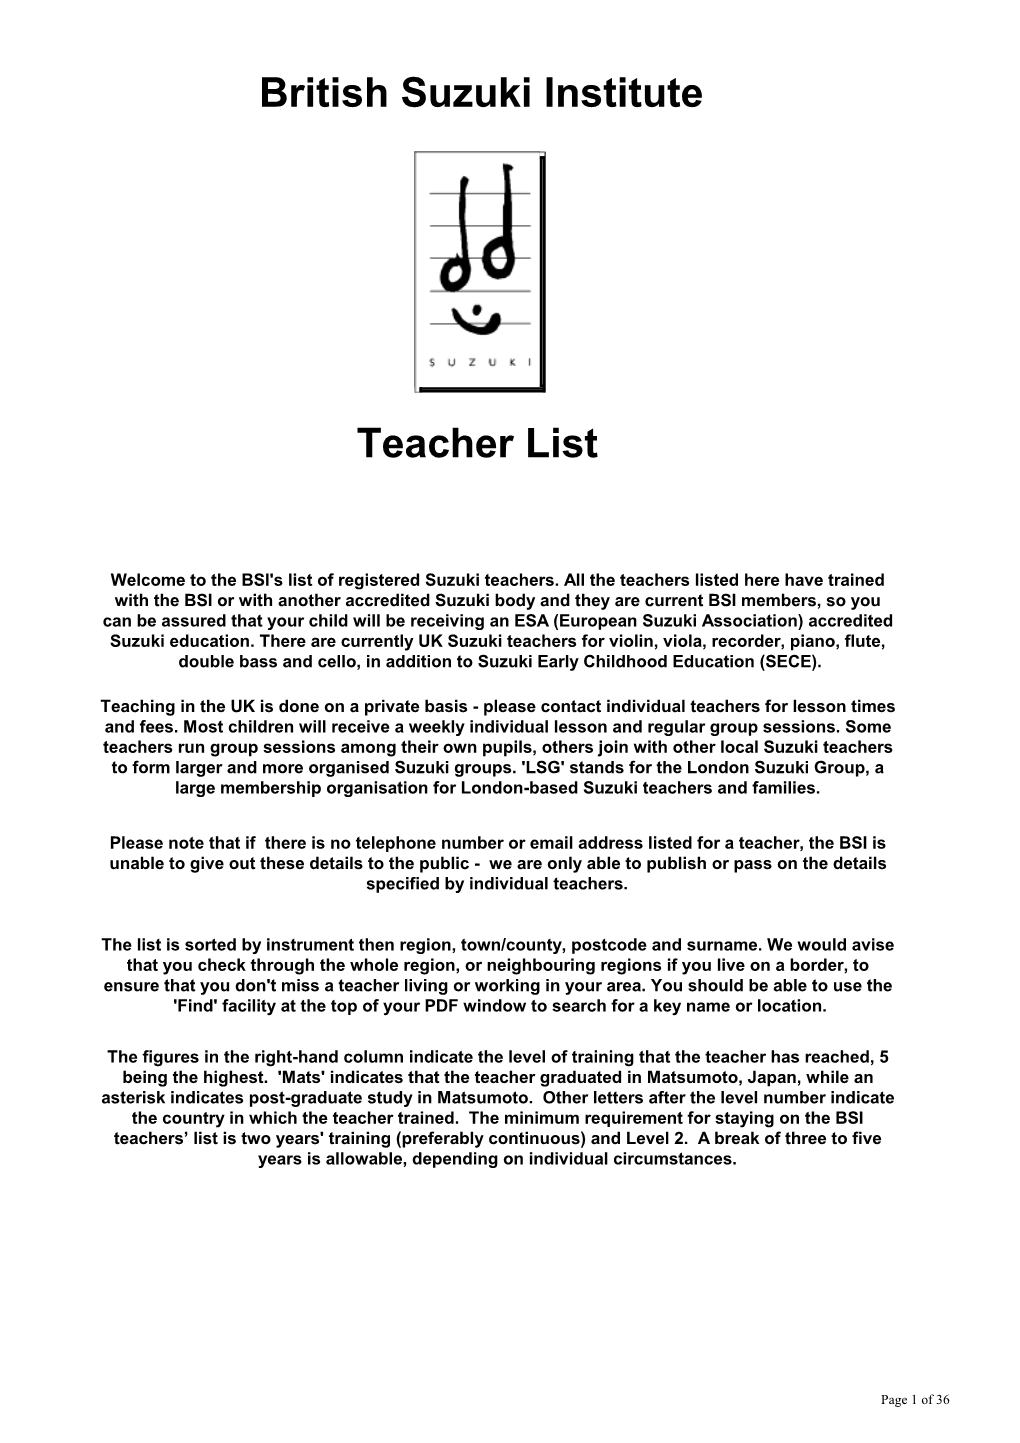 British Suzuki Institute Teacher List